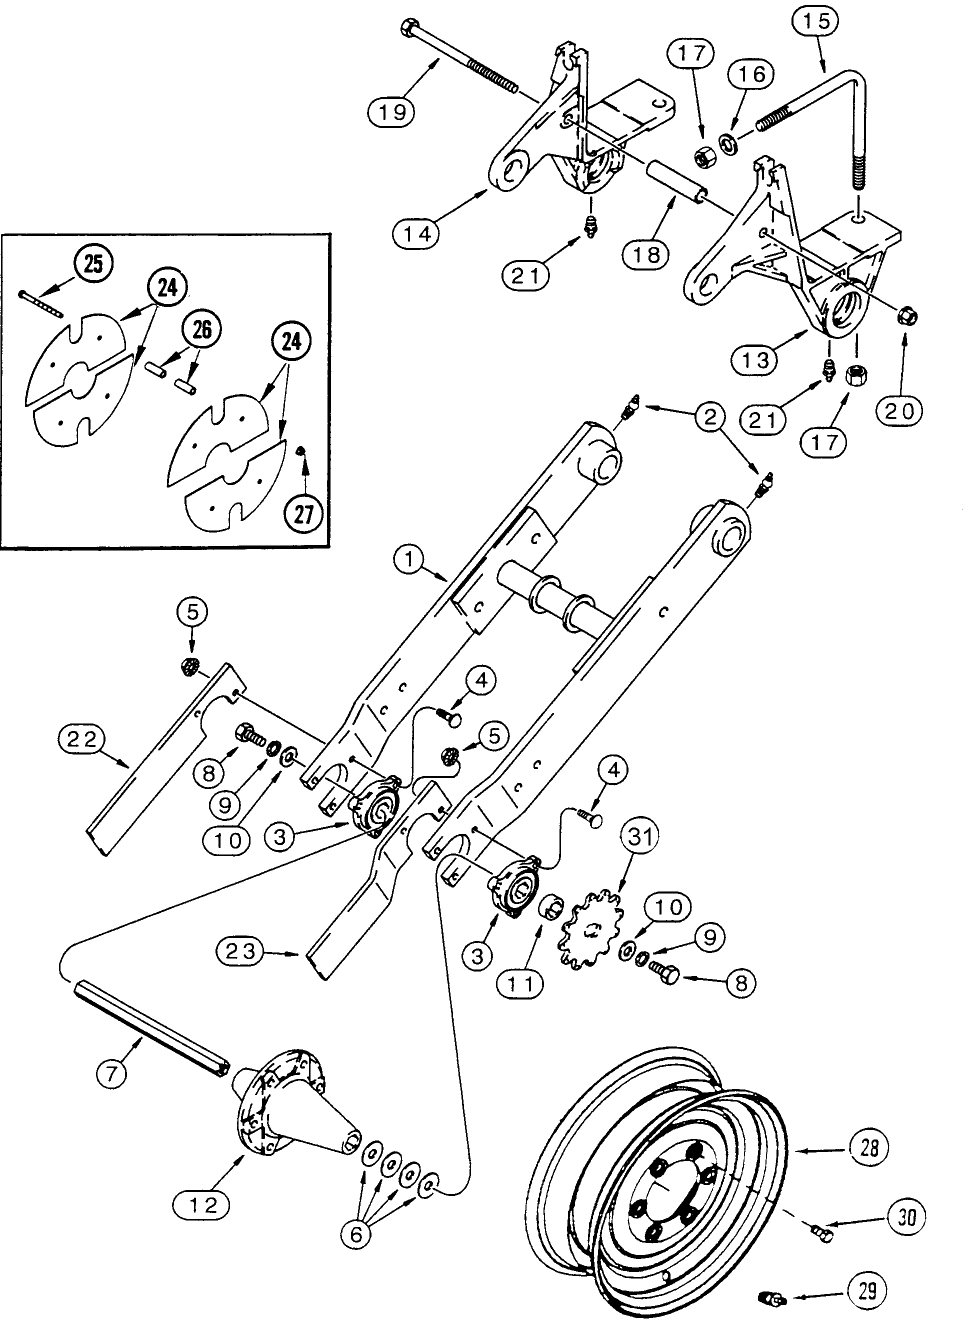 D.20.B(17) DRIVE WHEELS - DUAL ARM, 6R 8R TRAILING